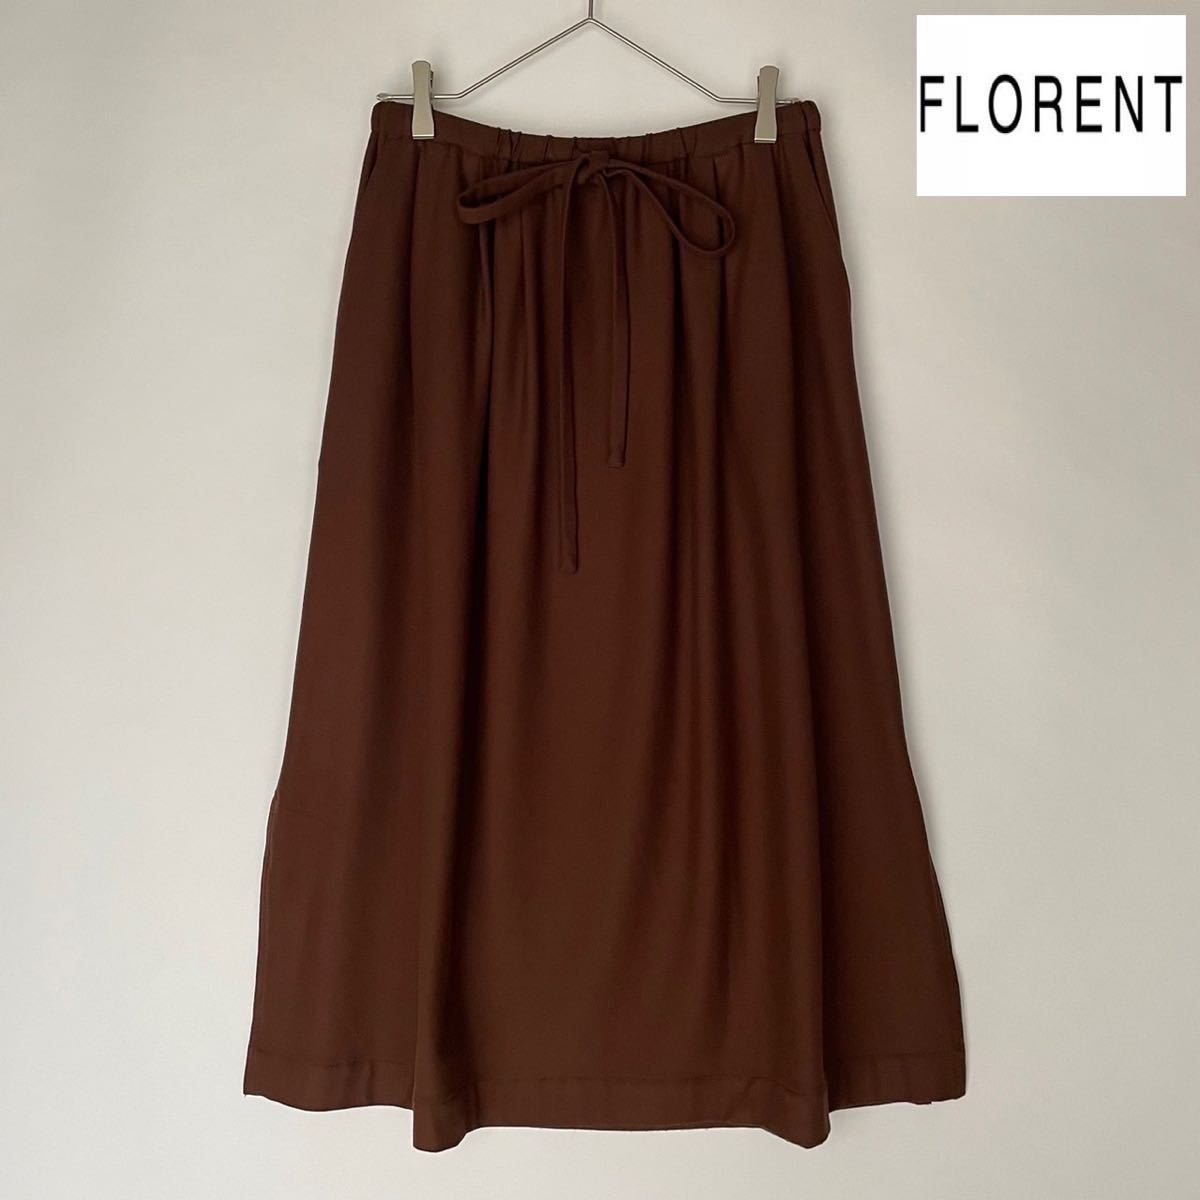 FLORENT フローレント 日本製 ギャザースカート ウエストゴム レーヨン ポリエステル 超美品 希少 ブラウン 茶系 size 36